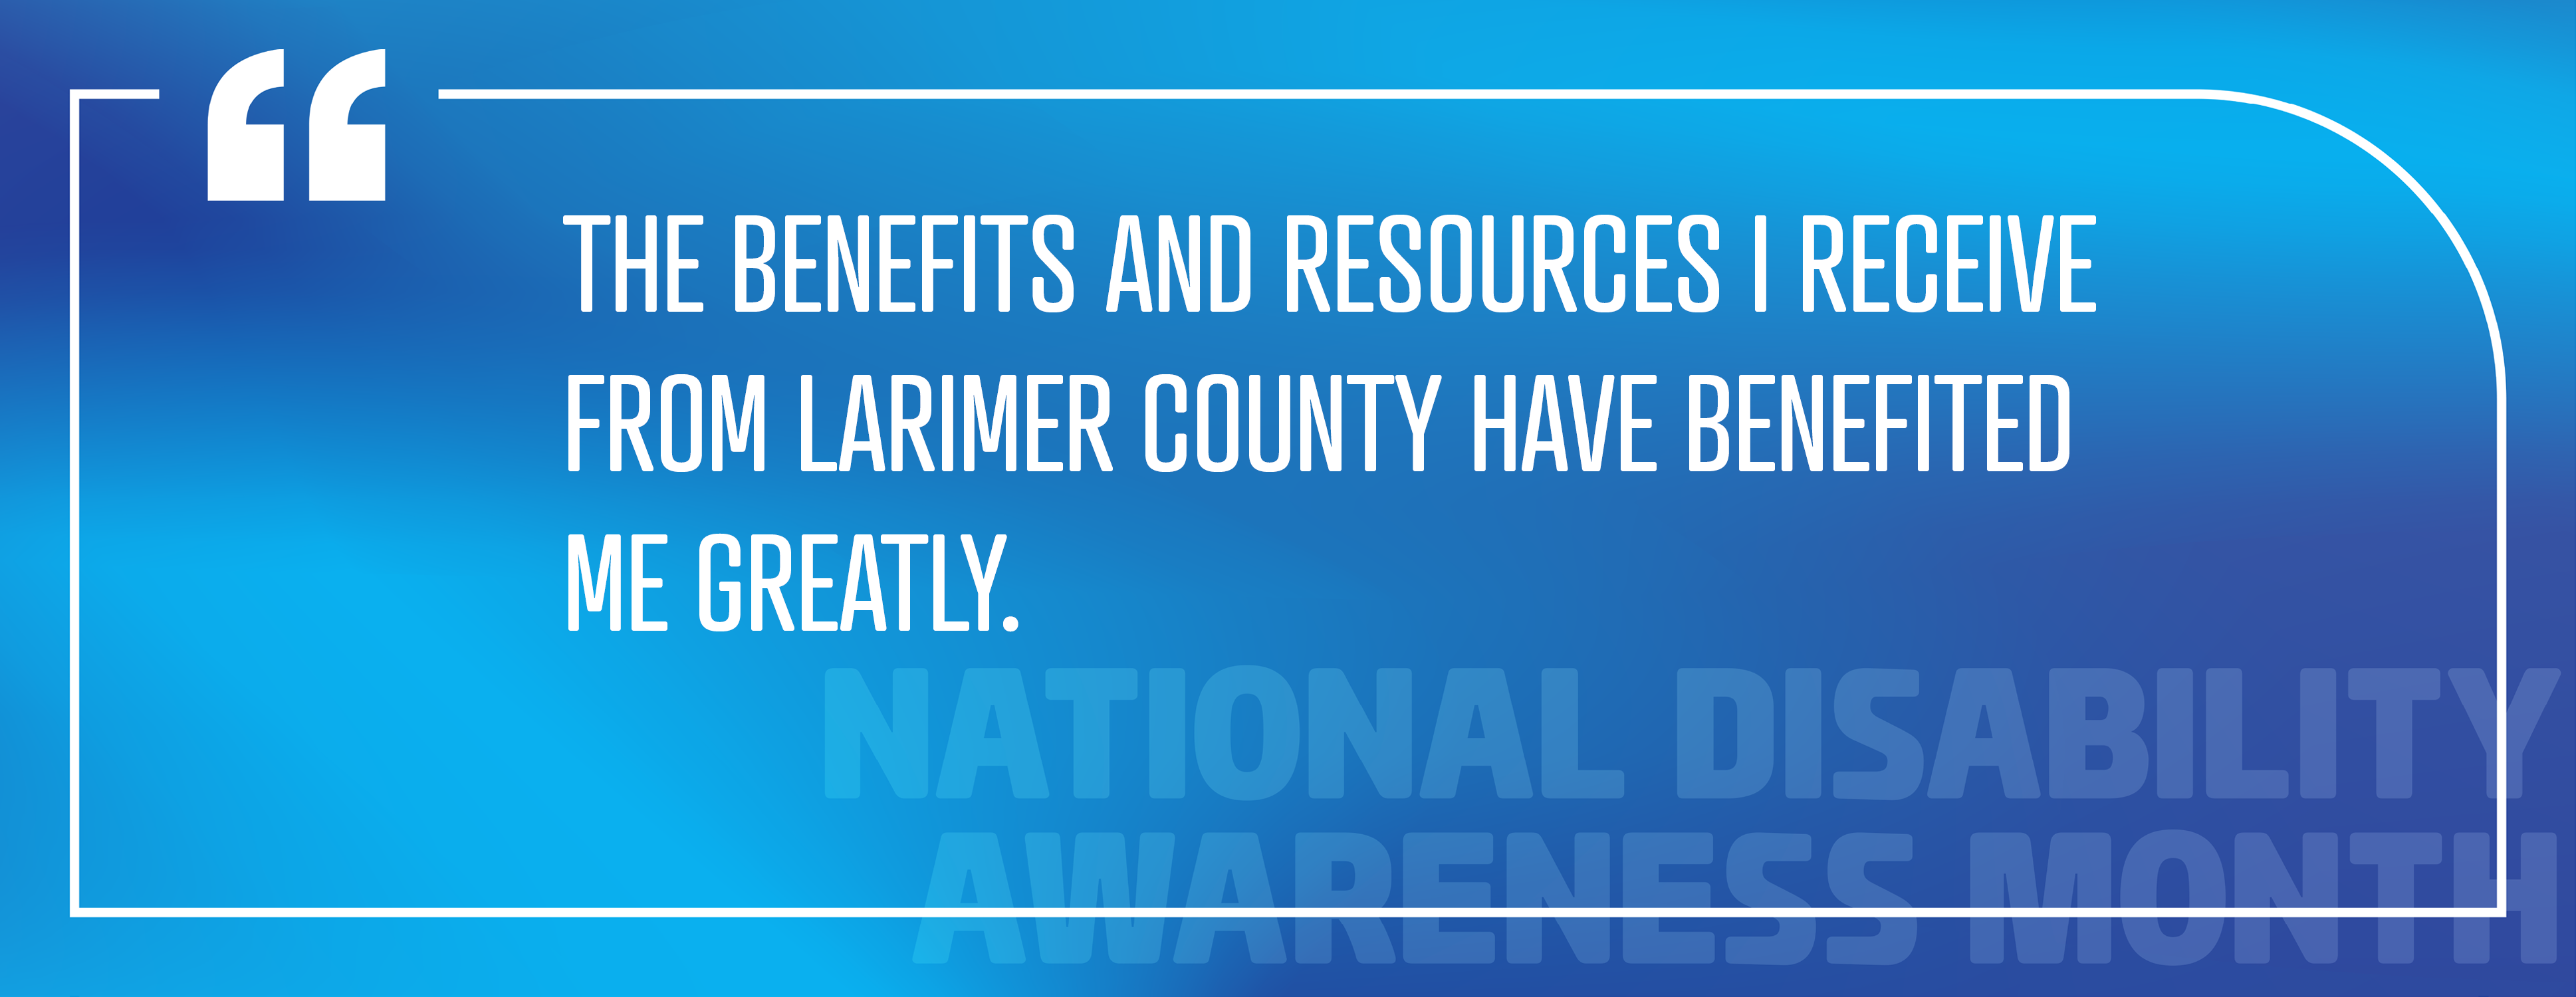 Imagen 5: "Los beneficios y recursos que recibo del condado de Larimer me han beneficiado enormemente".